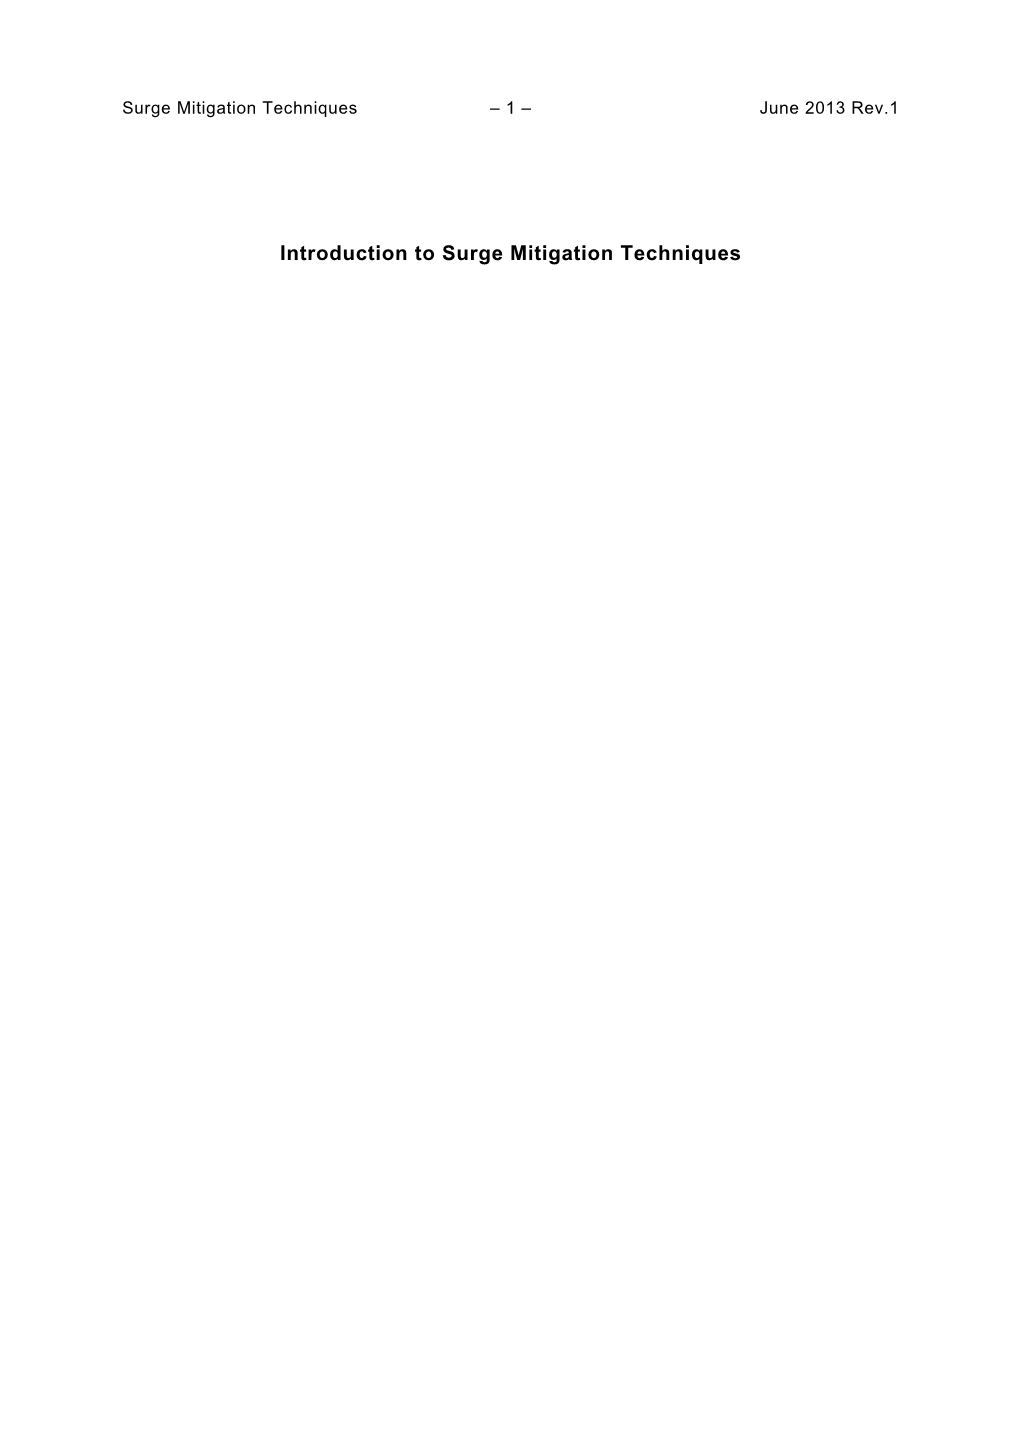 Introduction to Surge Mitigation Techniques Surge Mitigation Techniques – 2 – June 2013 Rev.1